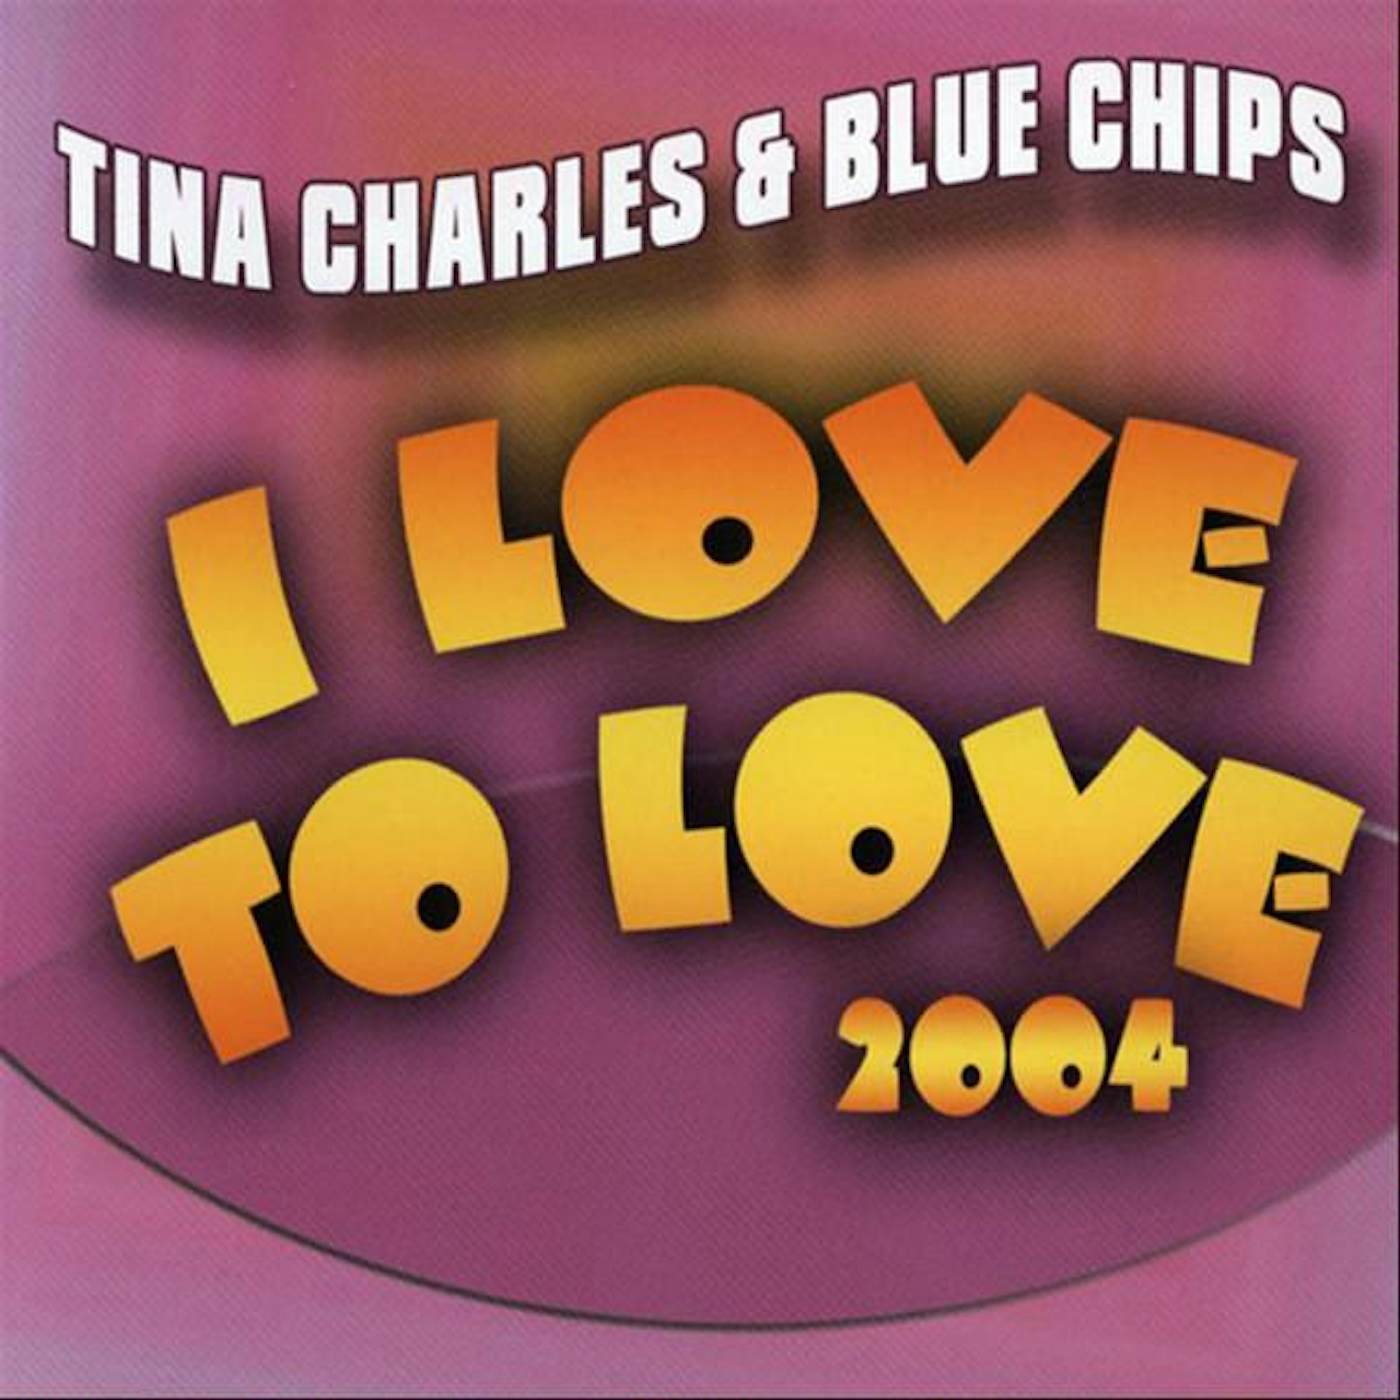 Tina Charles & Blue Chips